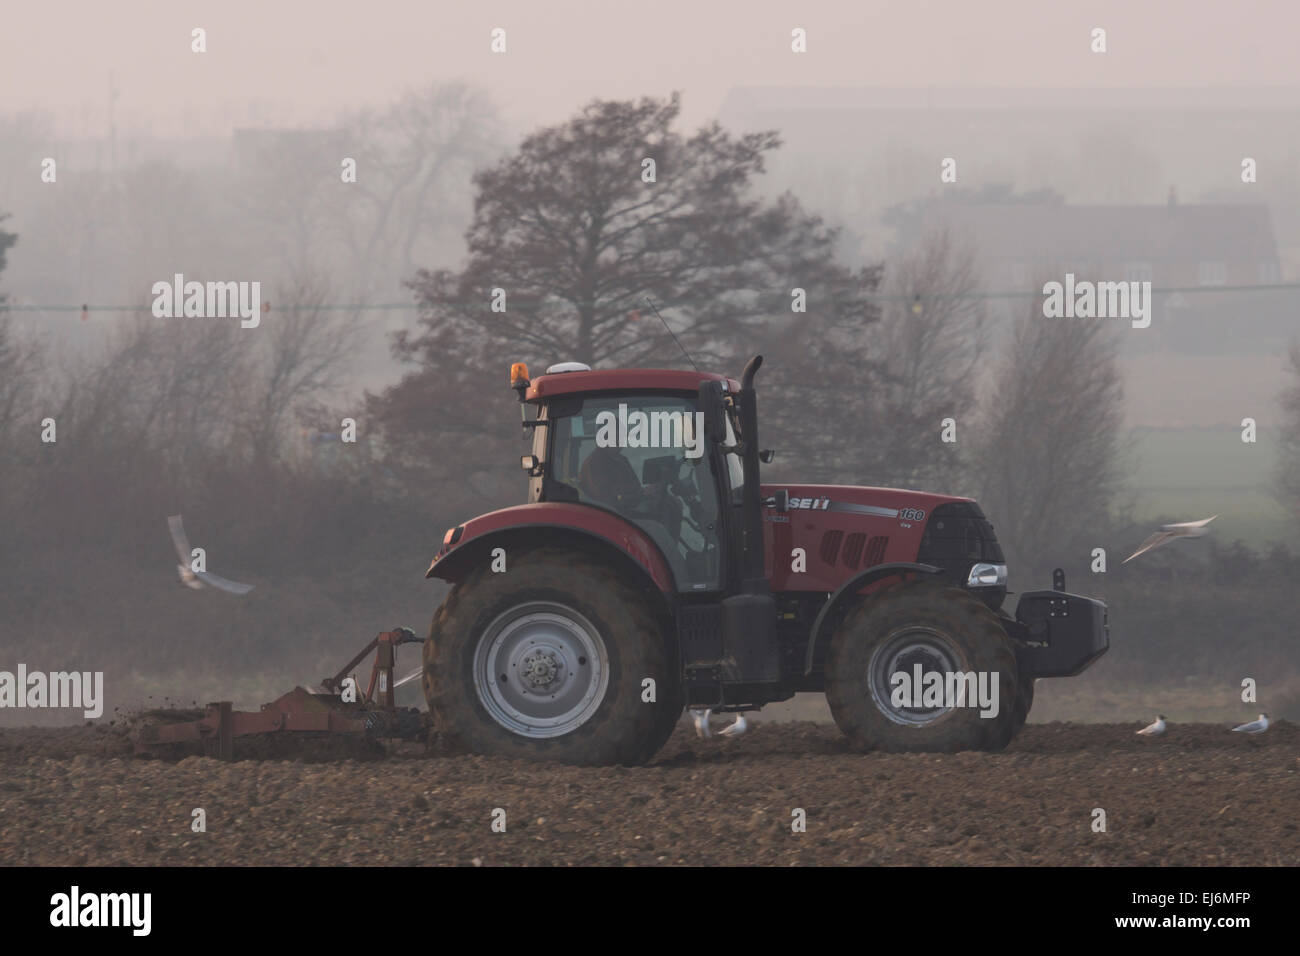 Ein roter Traktor Pflüge dieses Feld an einem nebligen Tag. Möwen fliegen rund um den Traktor in der Hoffnung, dass sie etwas erhalten. Stockfoto